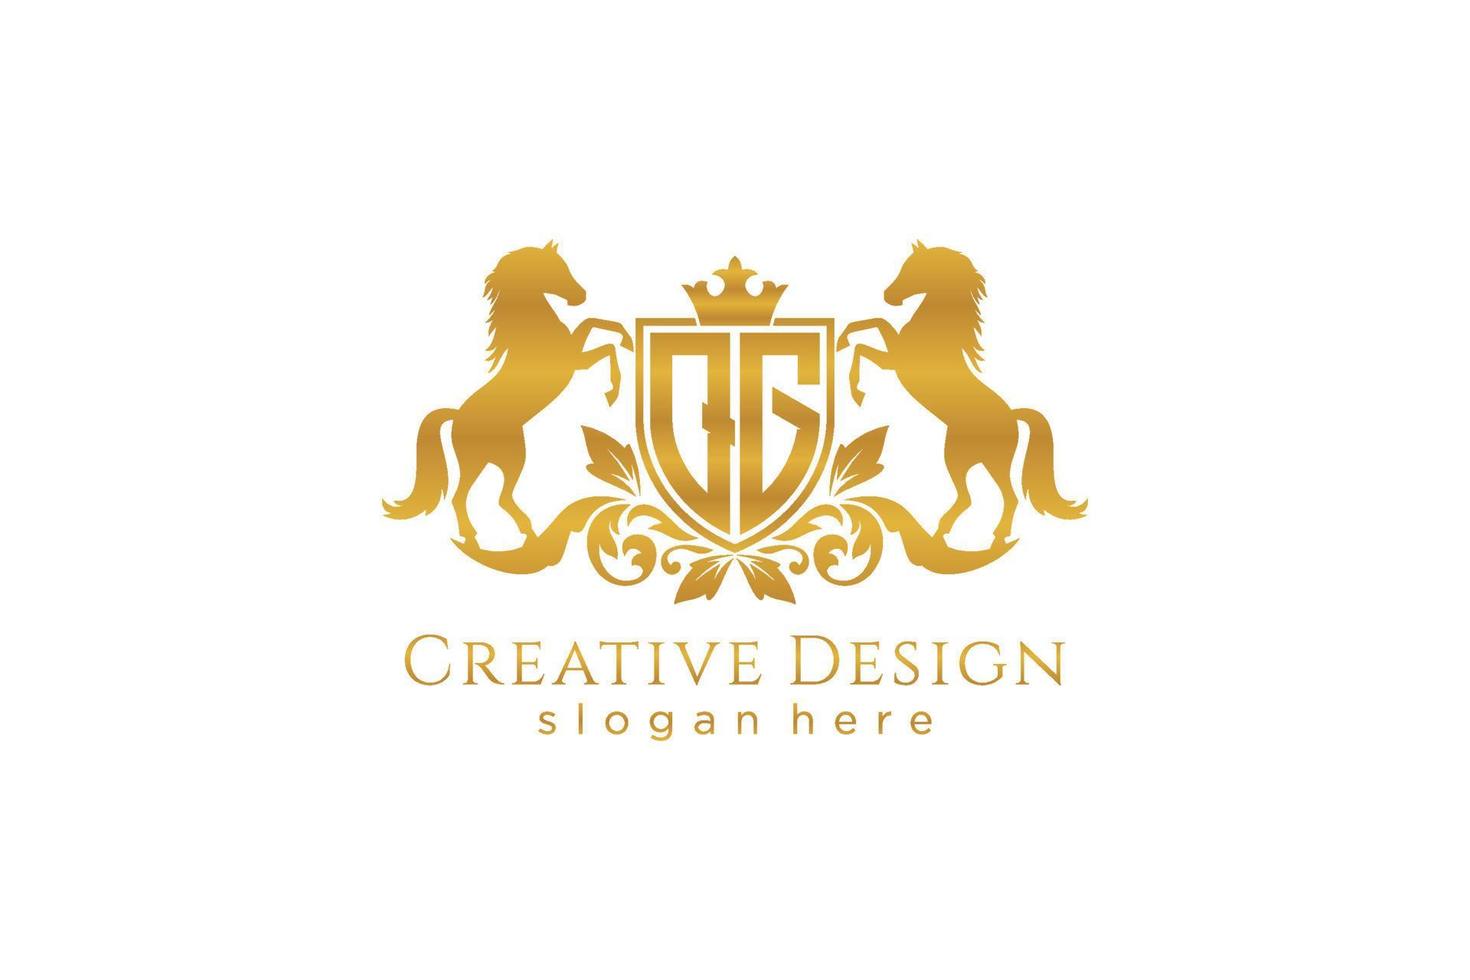 cresta dorada retro qg inicial con escudo y dos caballos, plantilla de insignia con pergaminos y corona real - perfecto para proyectos de marca de lujo vector